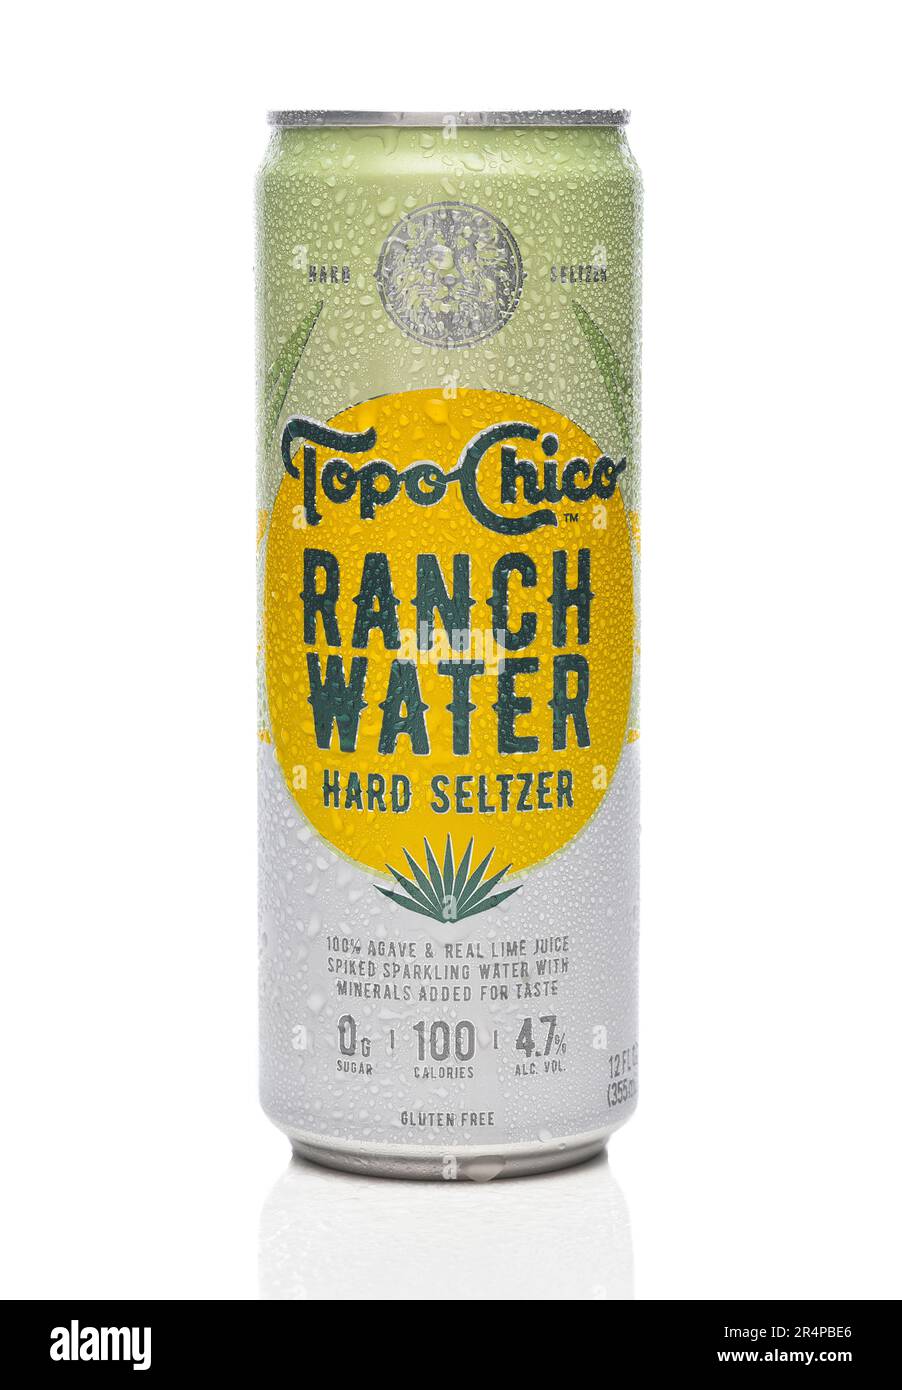 IRIVNE, CALIFORNIA - 29 MAGGIO 20223: Una lattina di topo Chico Ranch acqua Seltzer duro. Foto Stock